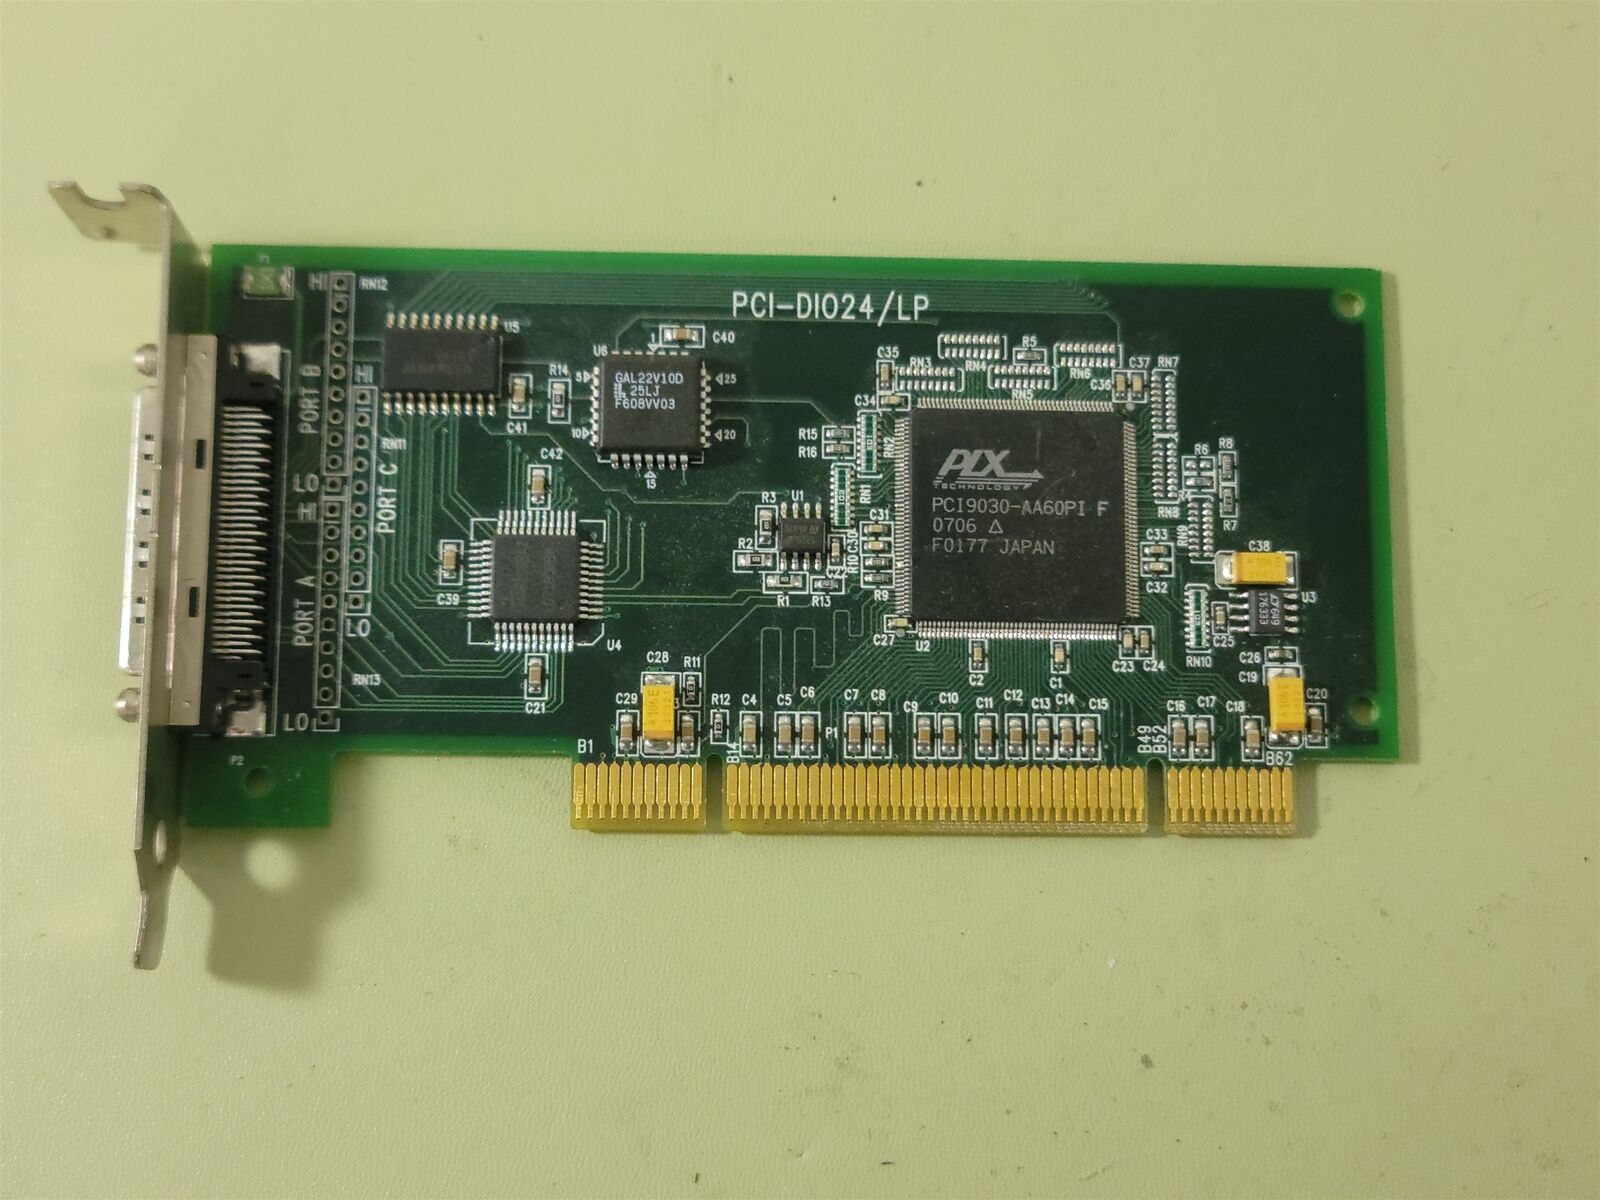 Measurement Computing PCI-DI024/LP 24-bit digital input/output (I/O) board